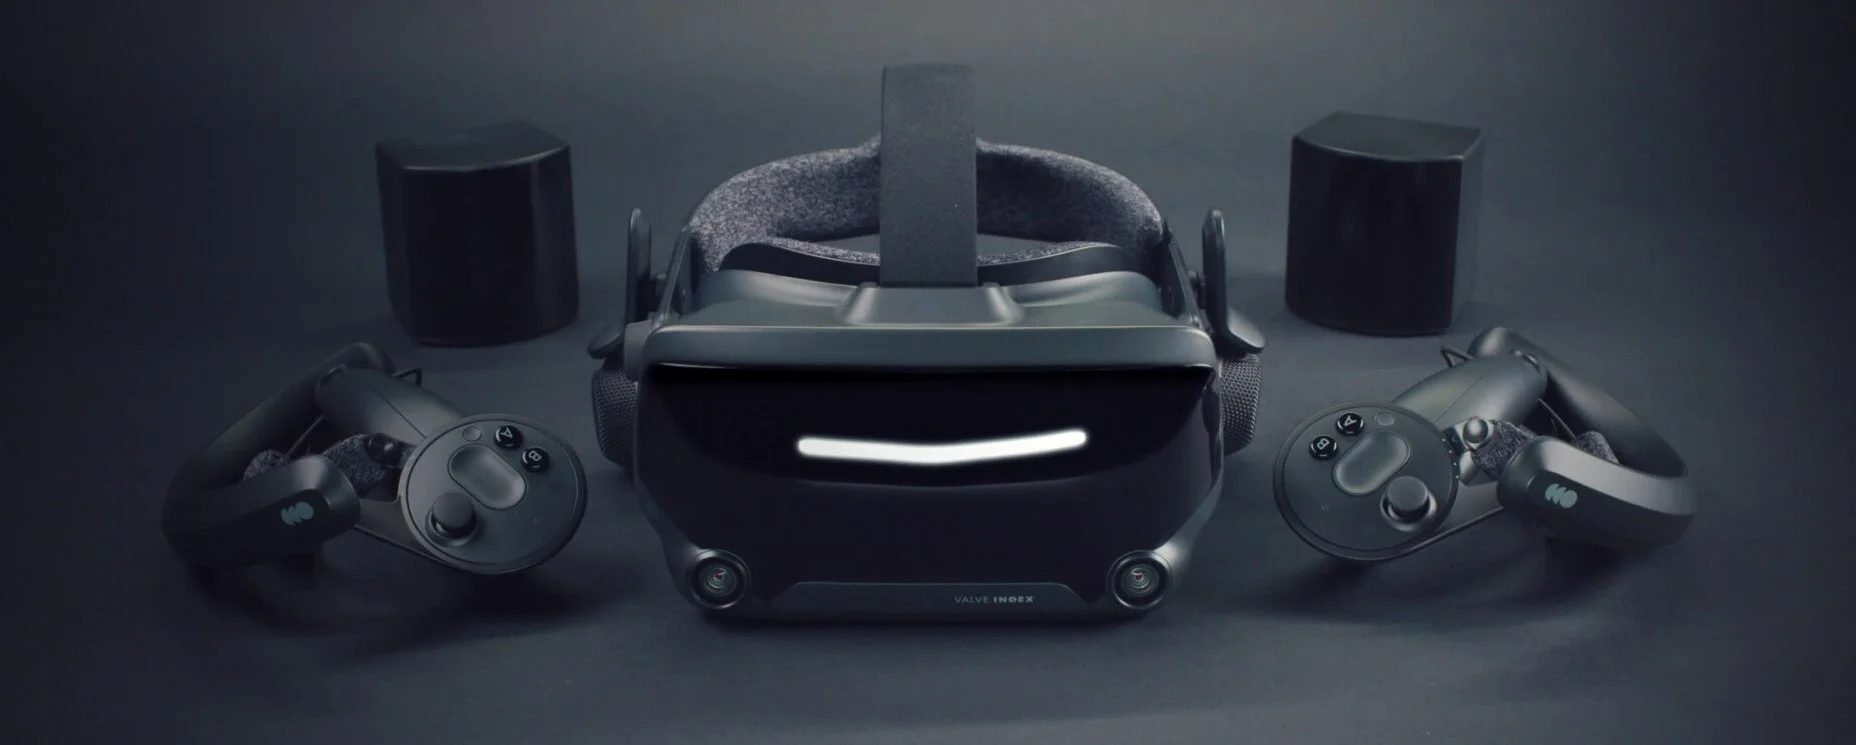 Valve Index VR возвращается в продажу: шлемы будут доступны 9 марта - фото 1